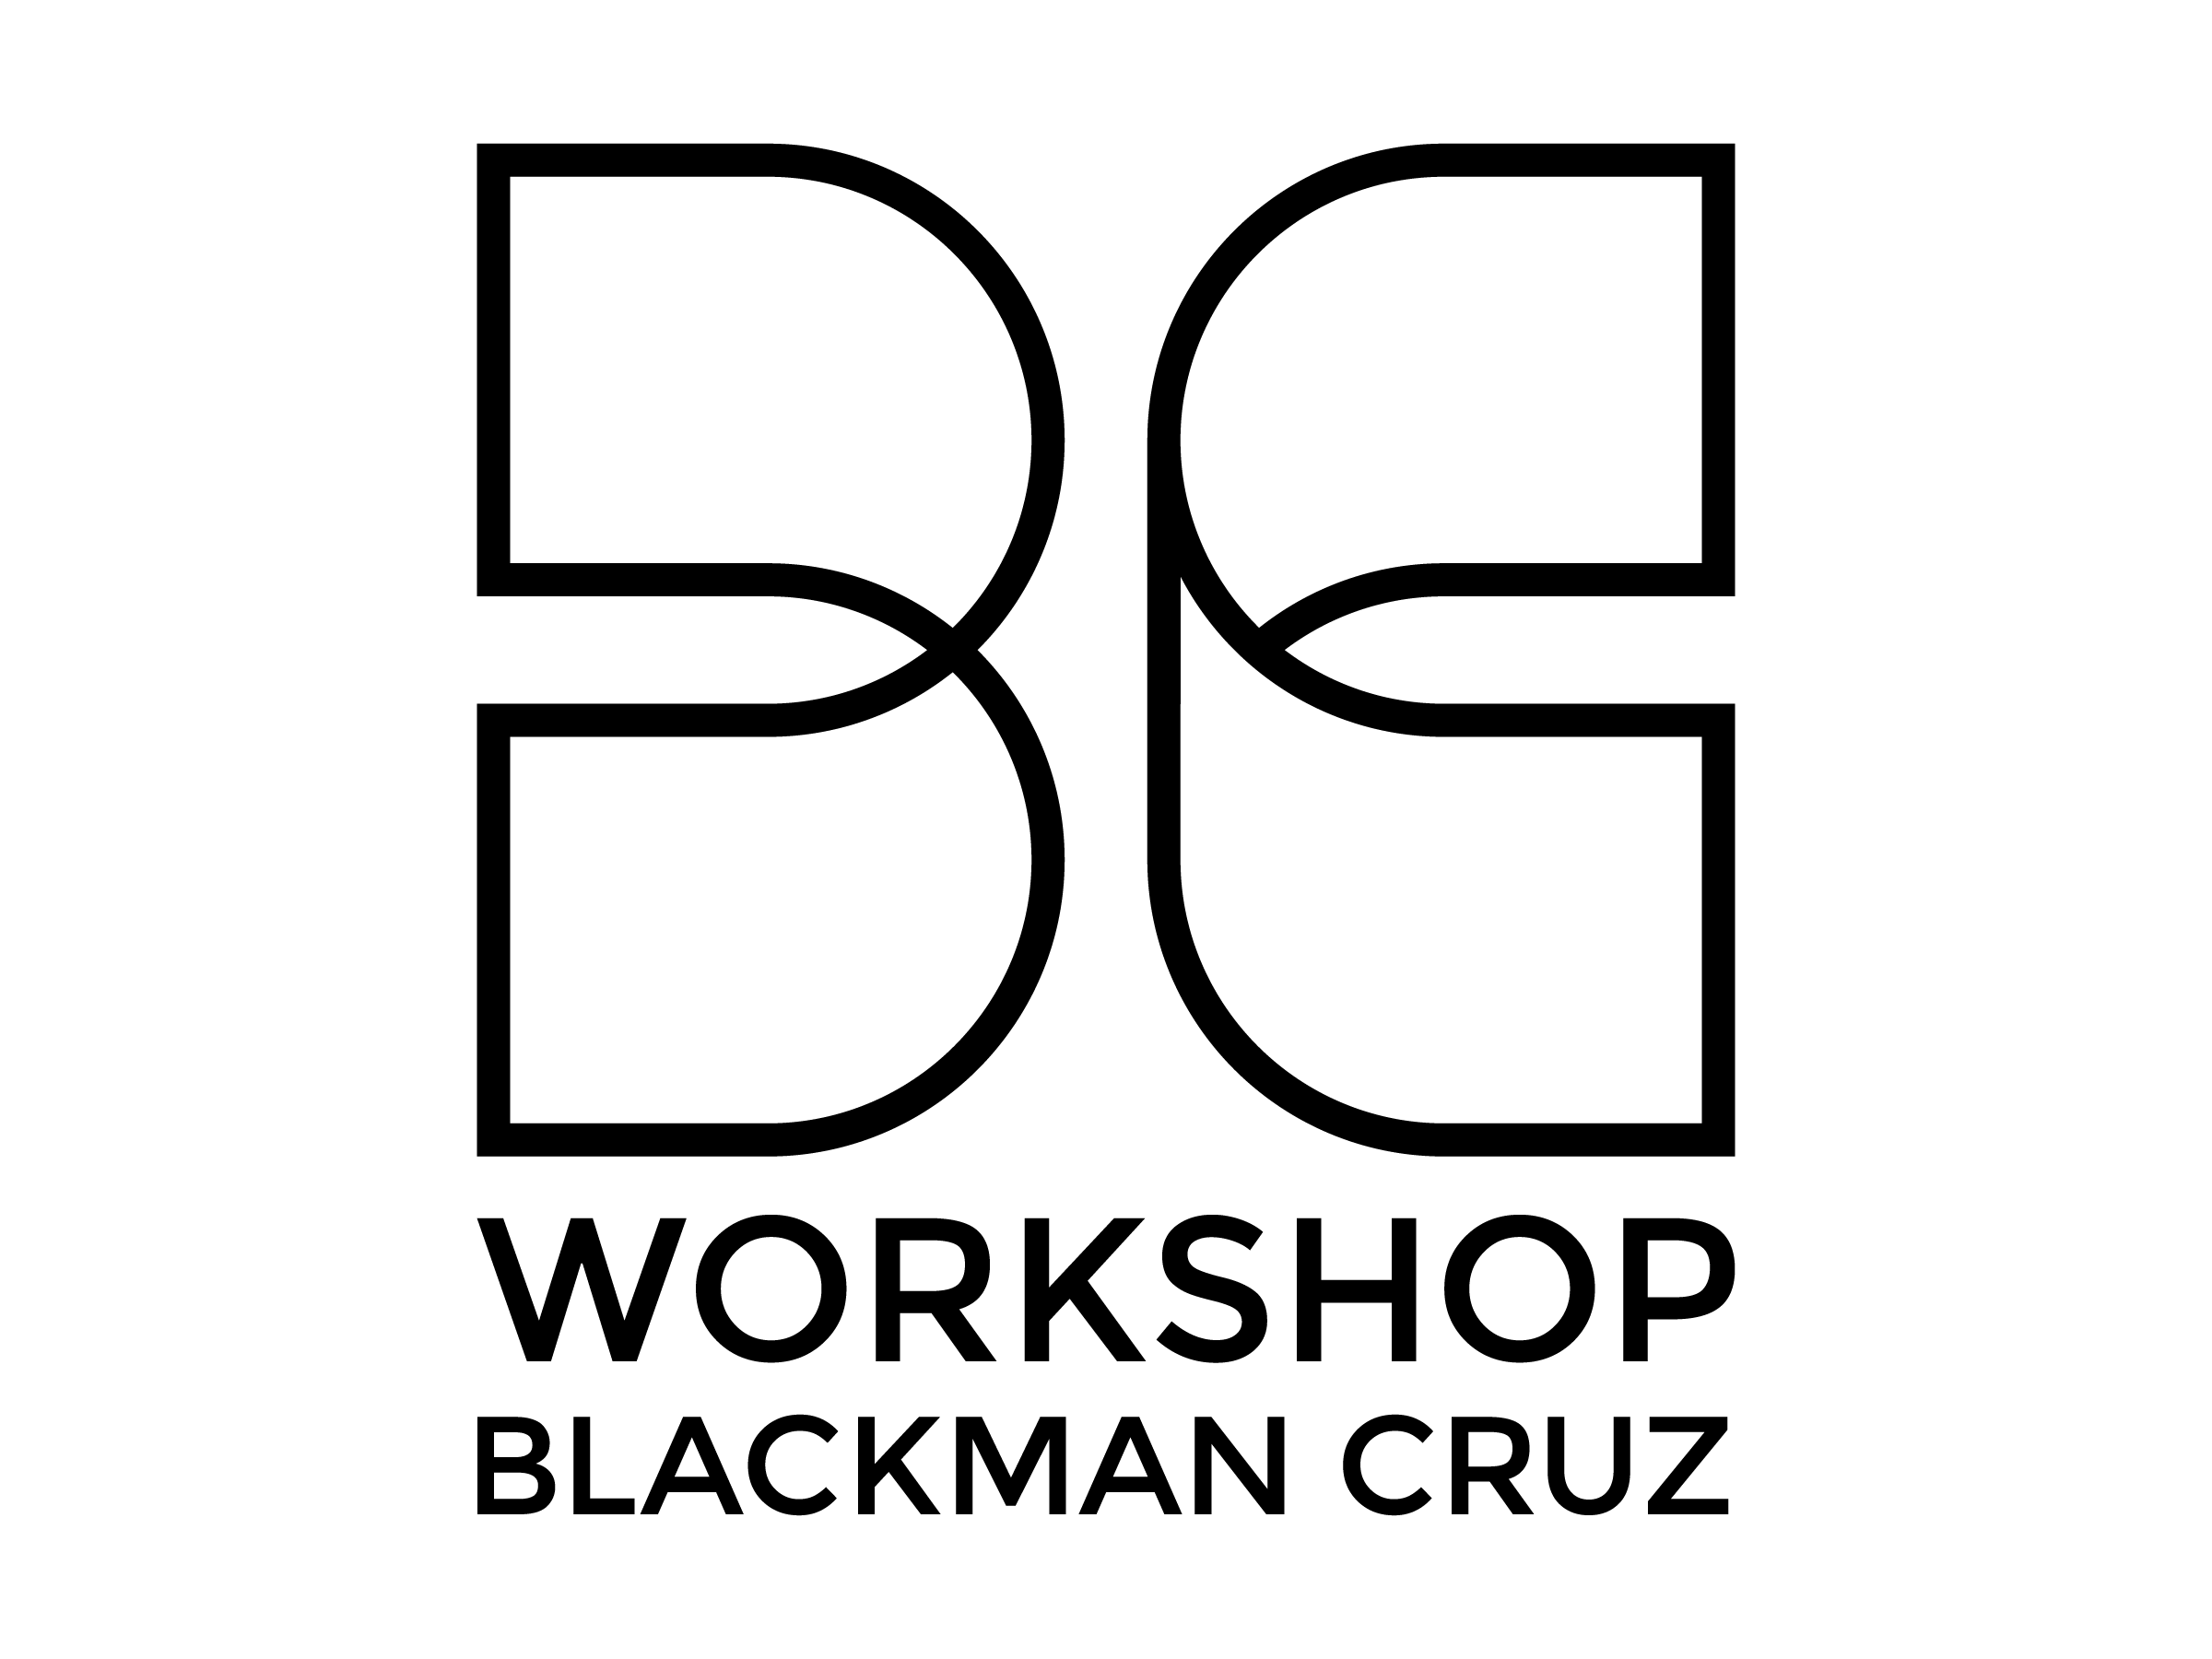 Blackman Cruz